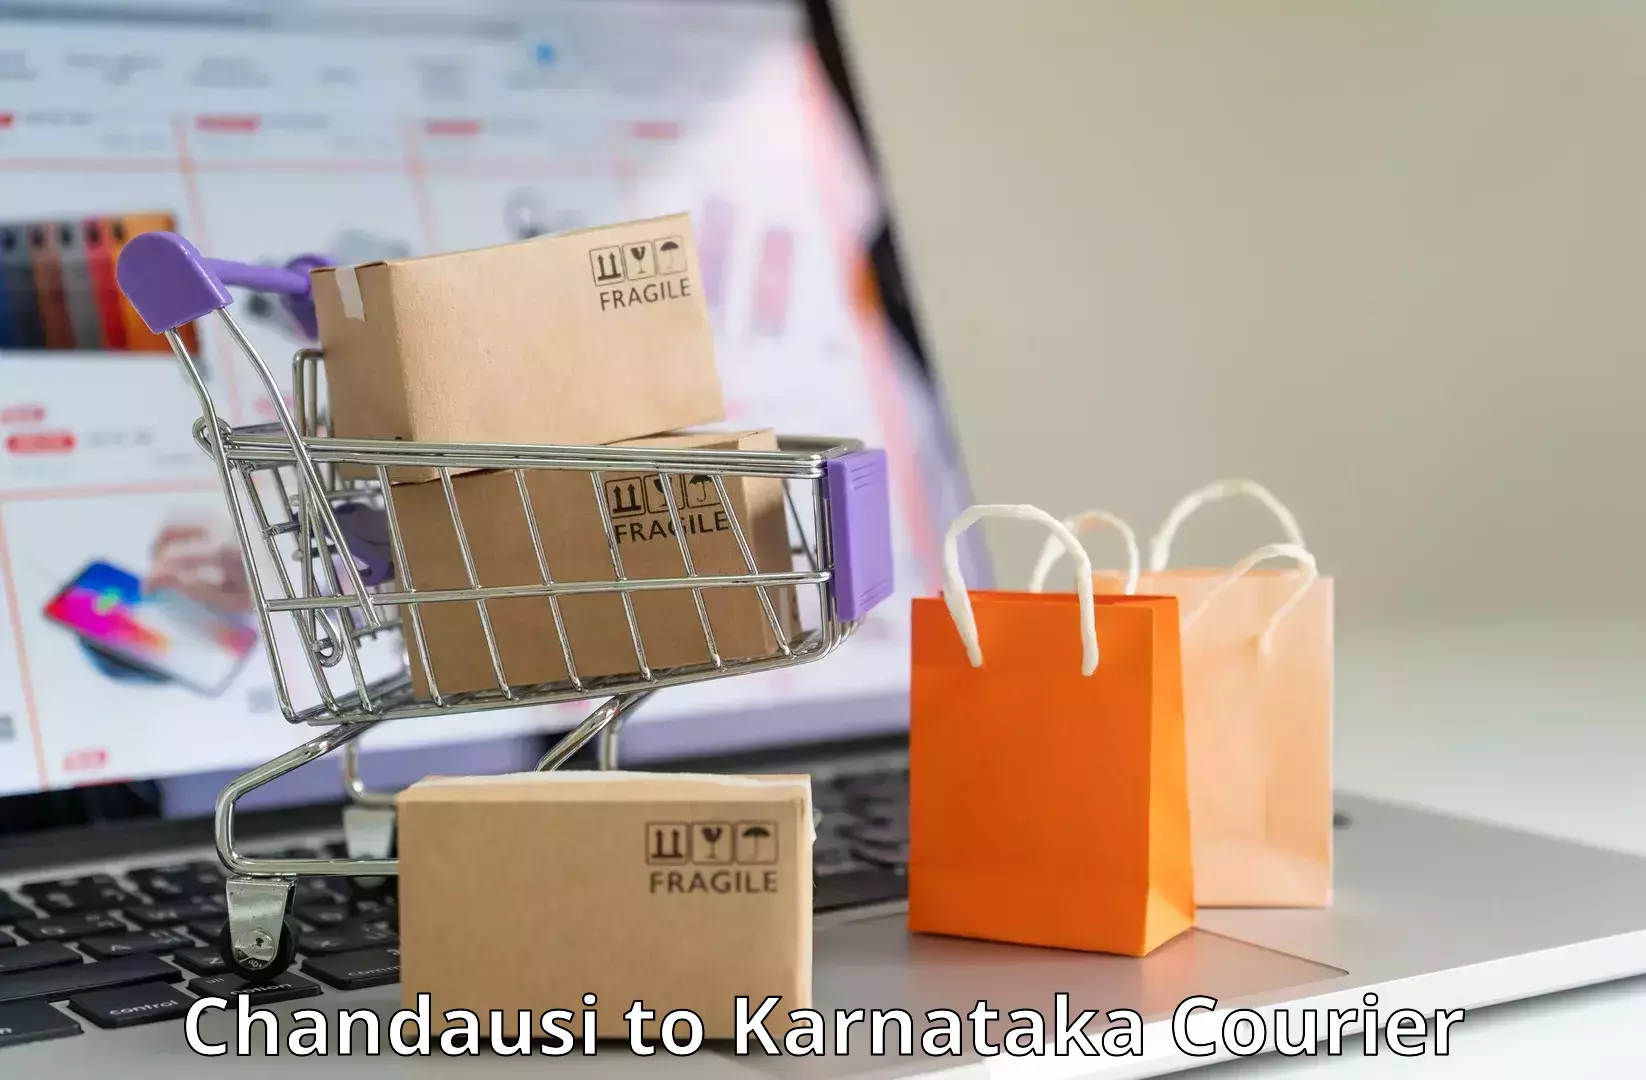 Quality courier partnerships Chandausi to Yenepoya Mangalore